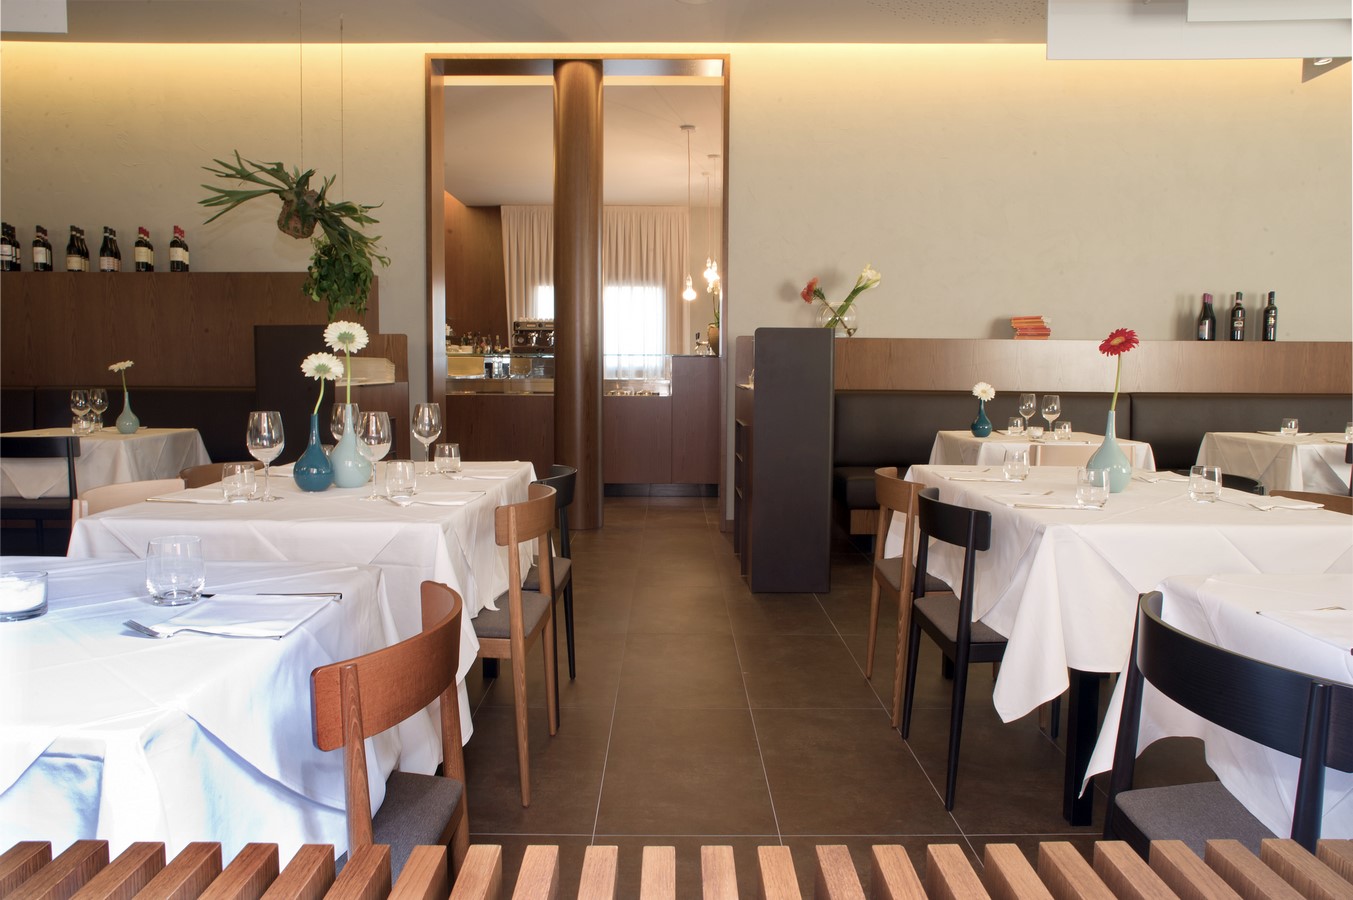 Tre Lanterne Restaurant By Massimiliano Gamba Architects - Sheet8